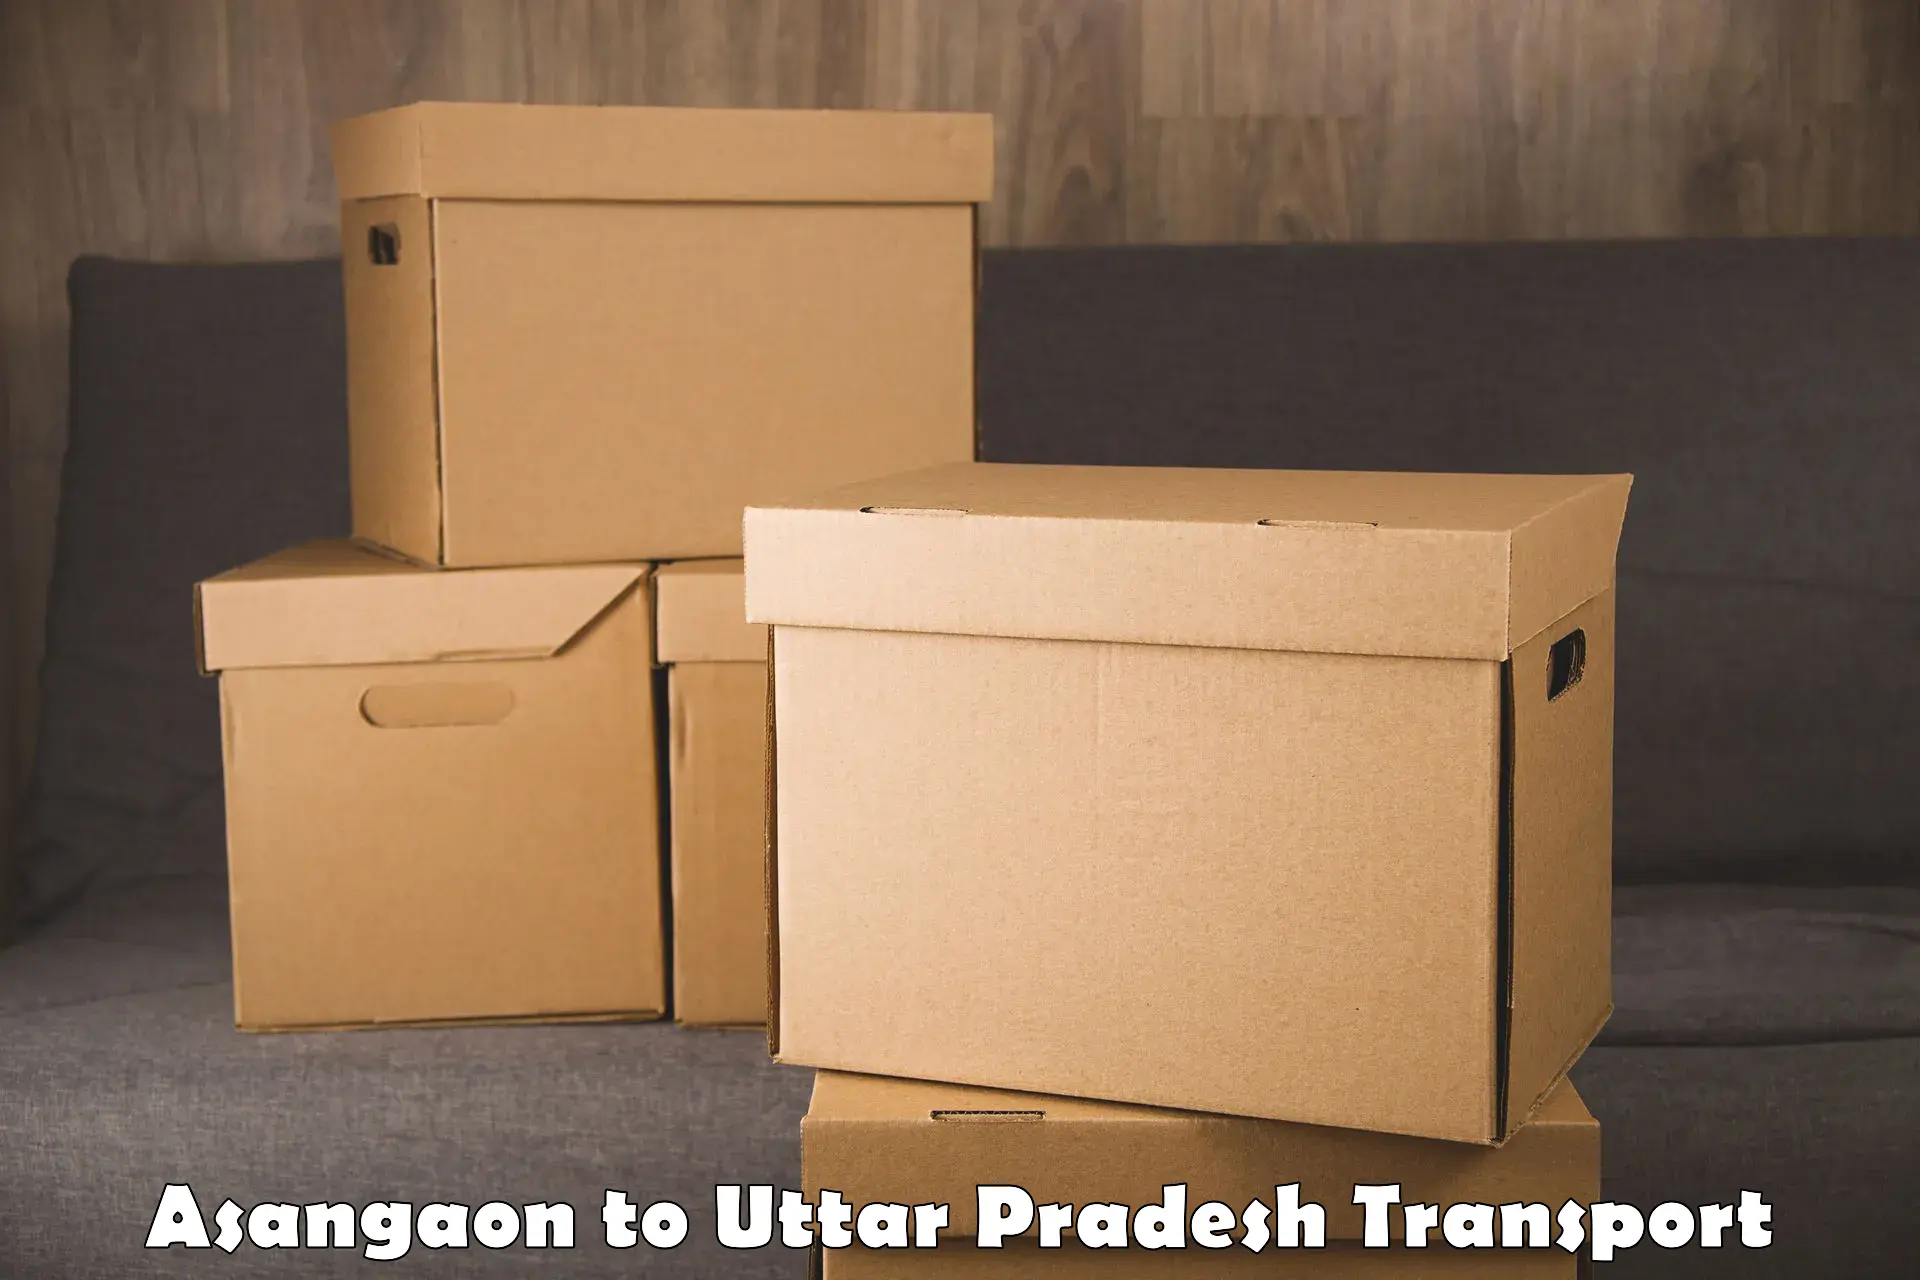 Daily parcel service transport Asangaon to Chandauli